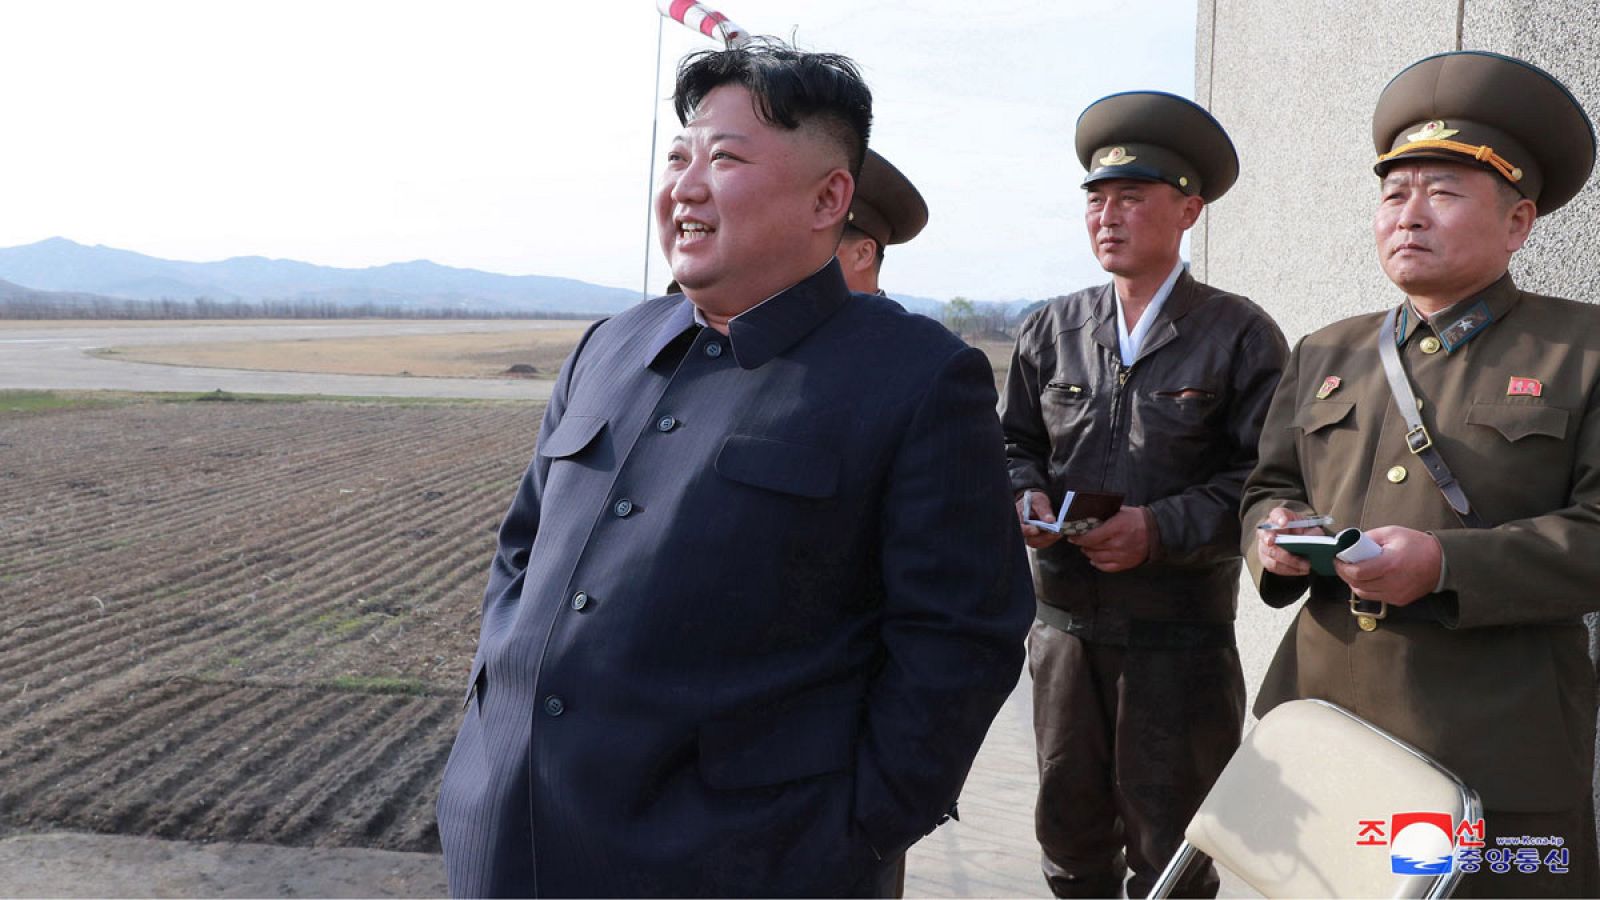 Fotografía cedida por la Agencia Central de Noticias de Corea del Norte (KCNA), muestra al líder norcoreano Kim Jong-un (i) mientras supervisa un ejercicio de vuelo